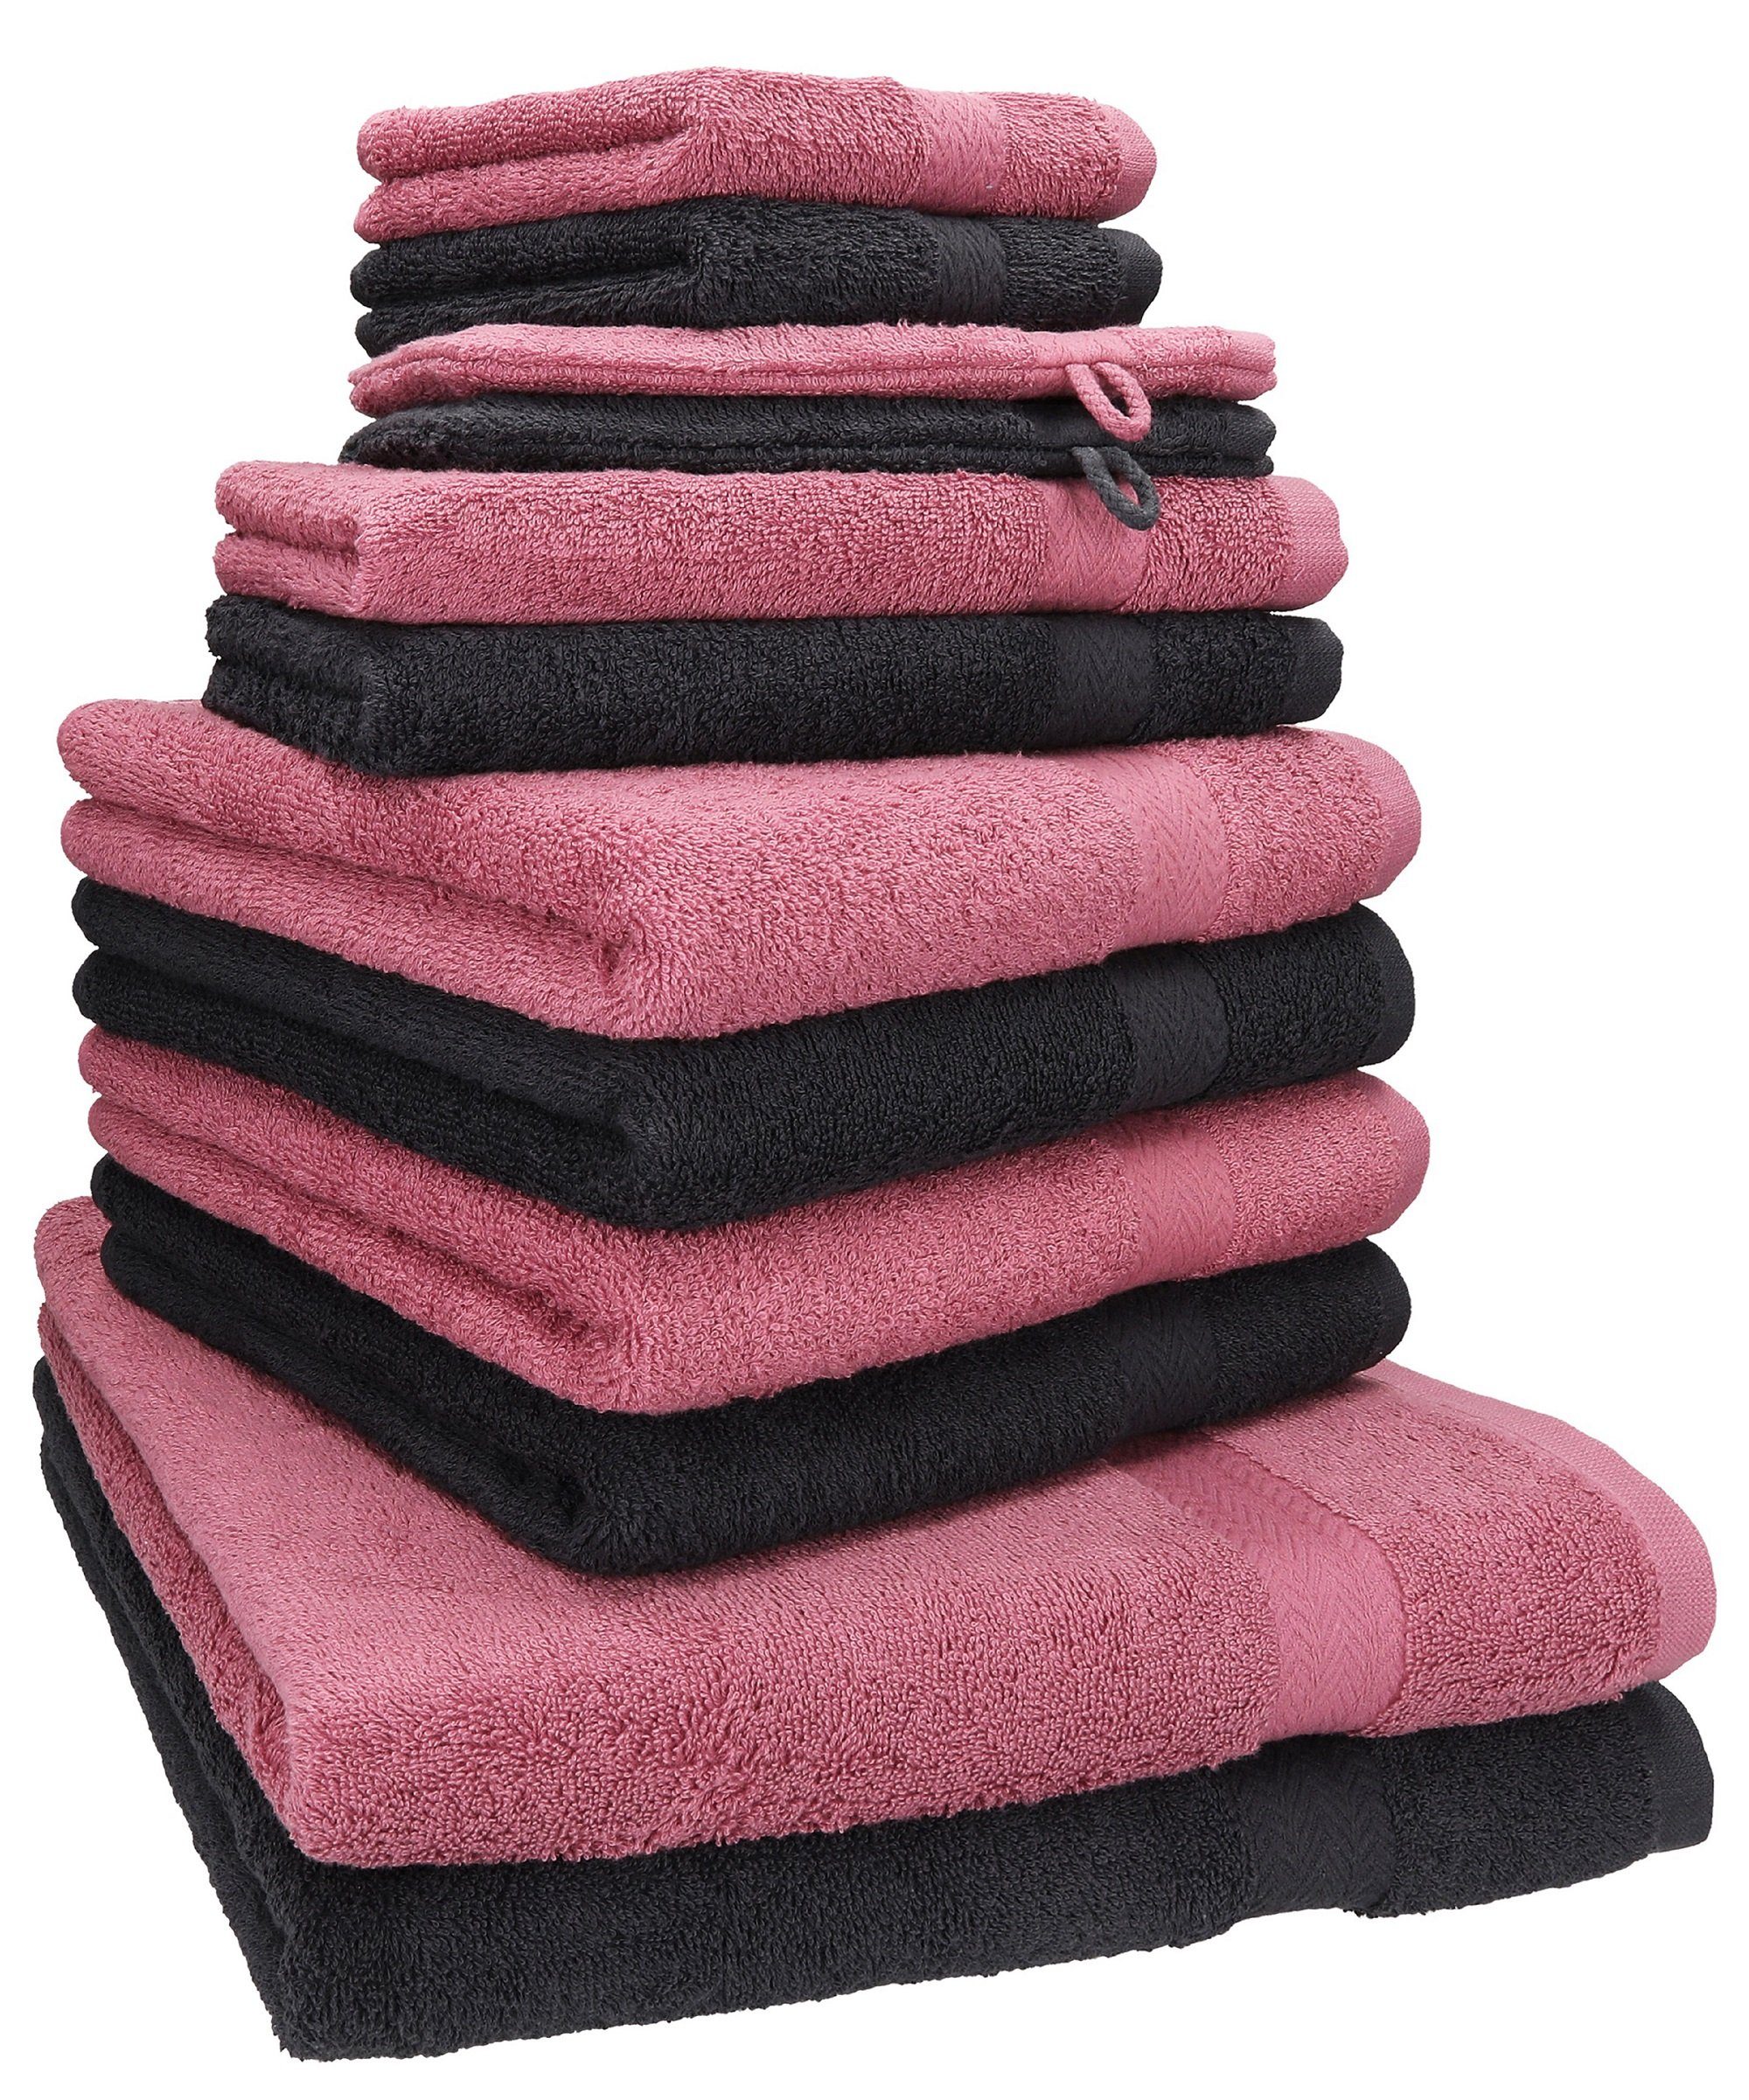 Heimtextilien Handtuch-Sets Betz Handtuch Set 12-TLG. Handtuch Set Premium 100% Baumwolle 2 Duschtücher 4 Handtücher 2 Gästetüch